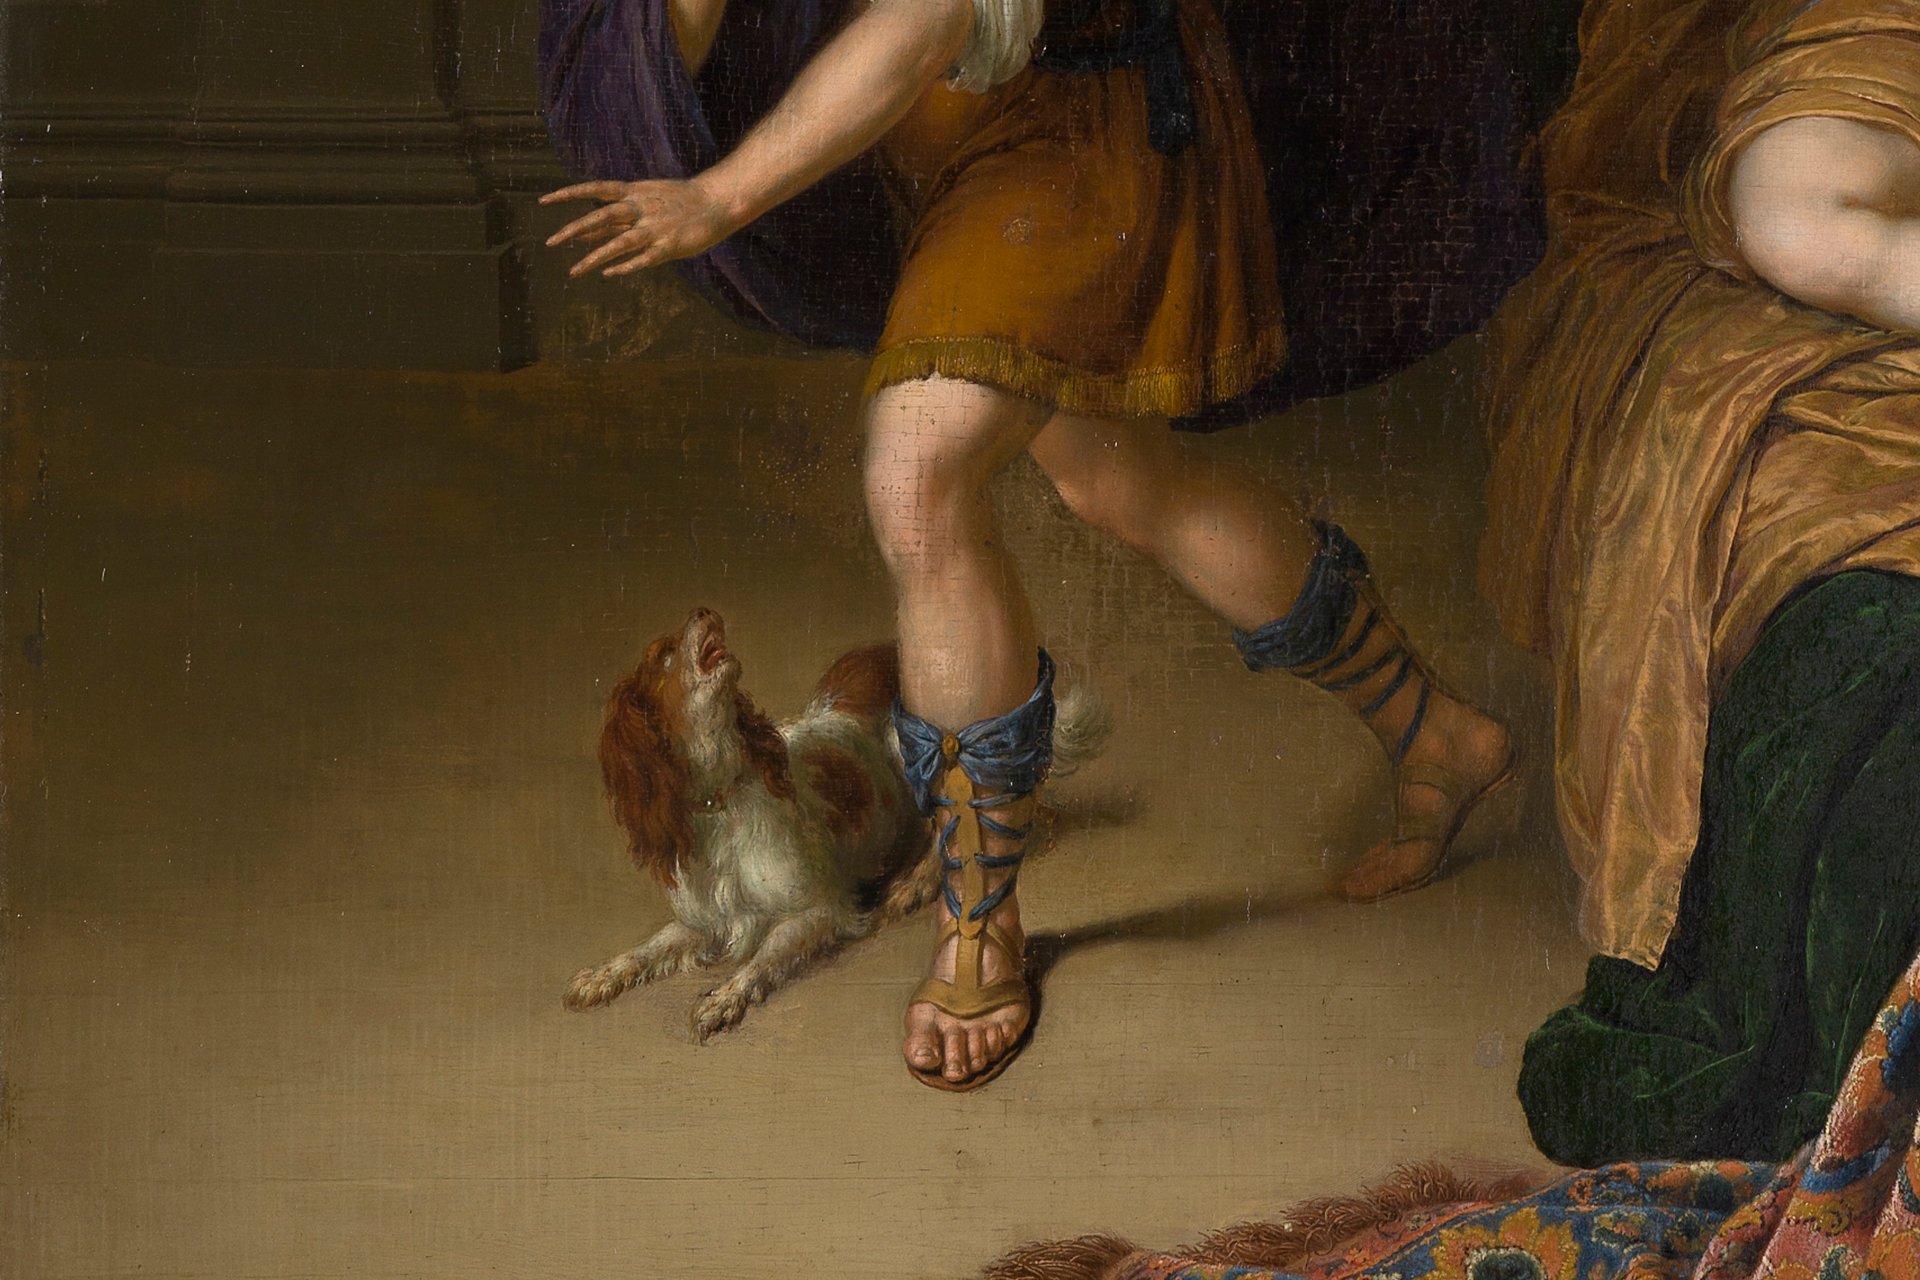 Detailausschnitt aus dem Gemälde "Joseph und die Frau des Potifar". Zu erkennen sind die Sandalen von Joseph und ein kleines Hündchen.